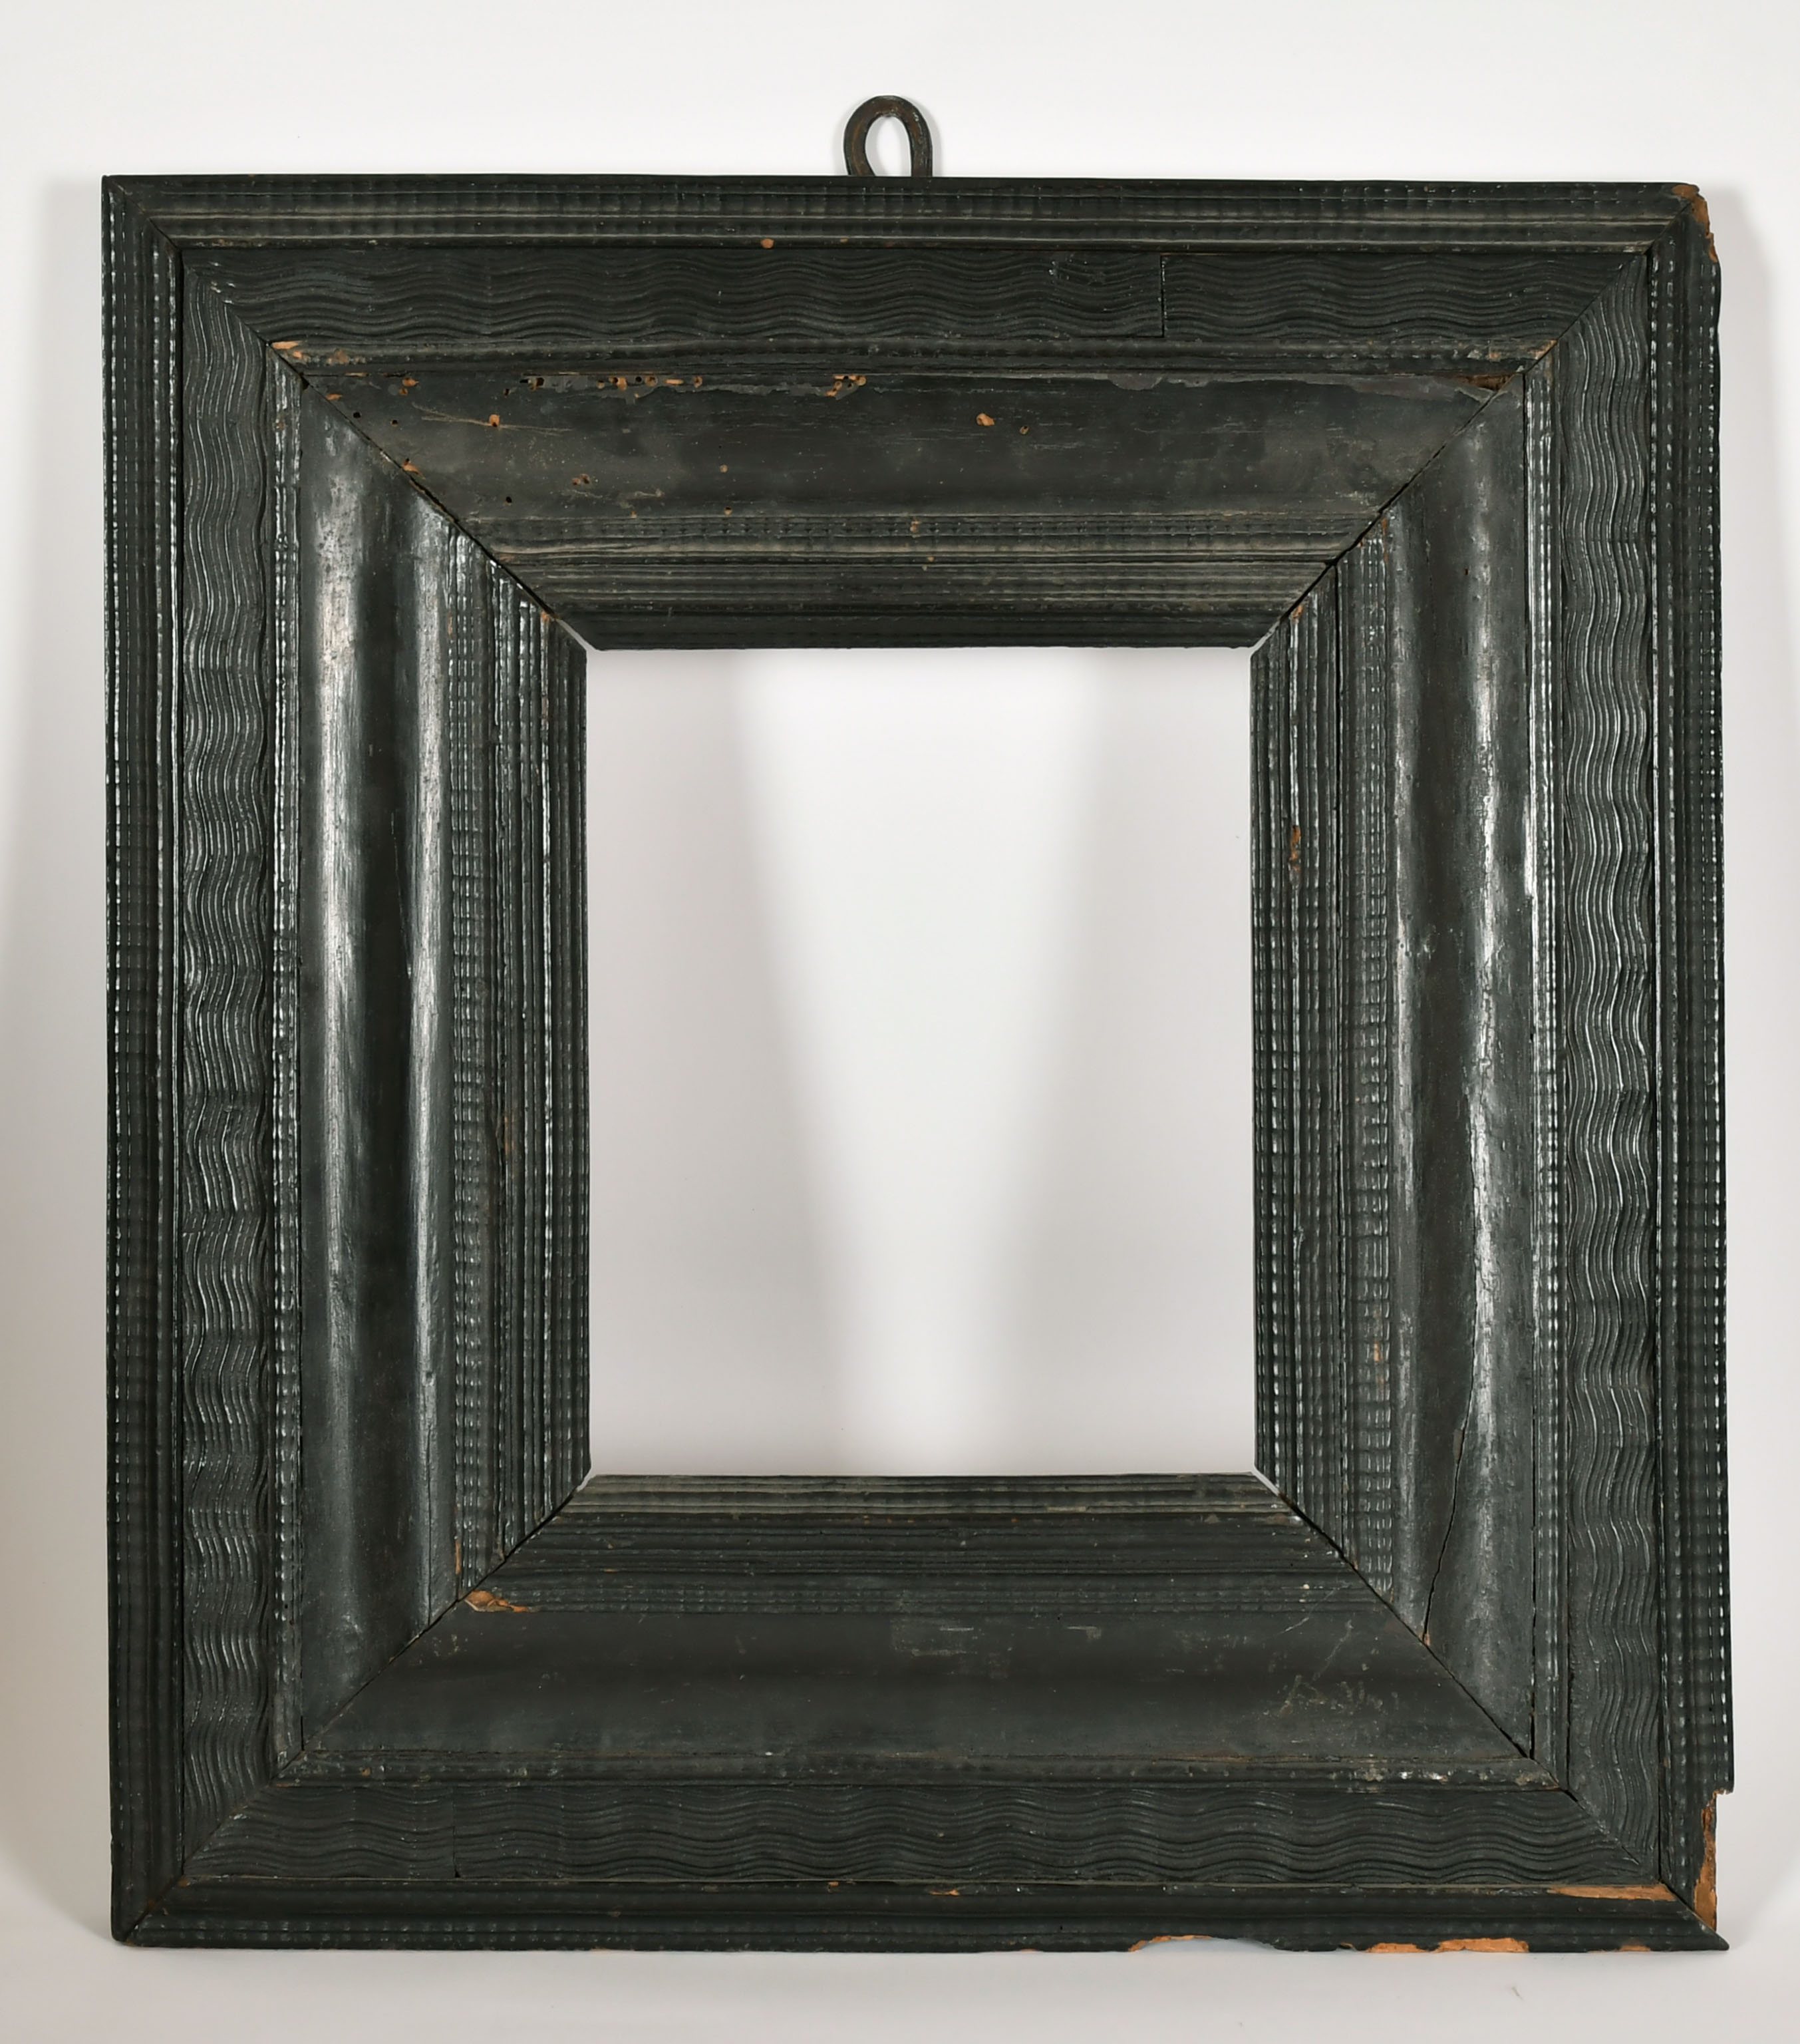 17th Century Dutch School. A Rippled Ebony Frame, rebate 10" x 8" (25.4 x 20.3cm) - Image 2 of 3